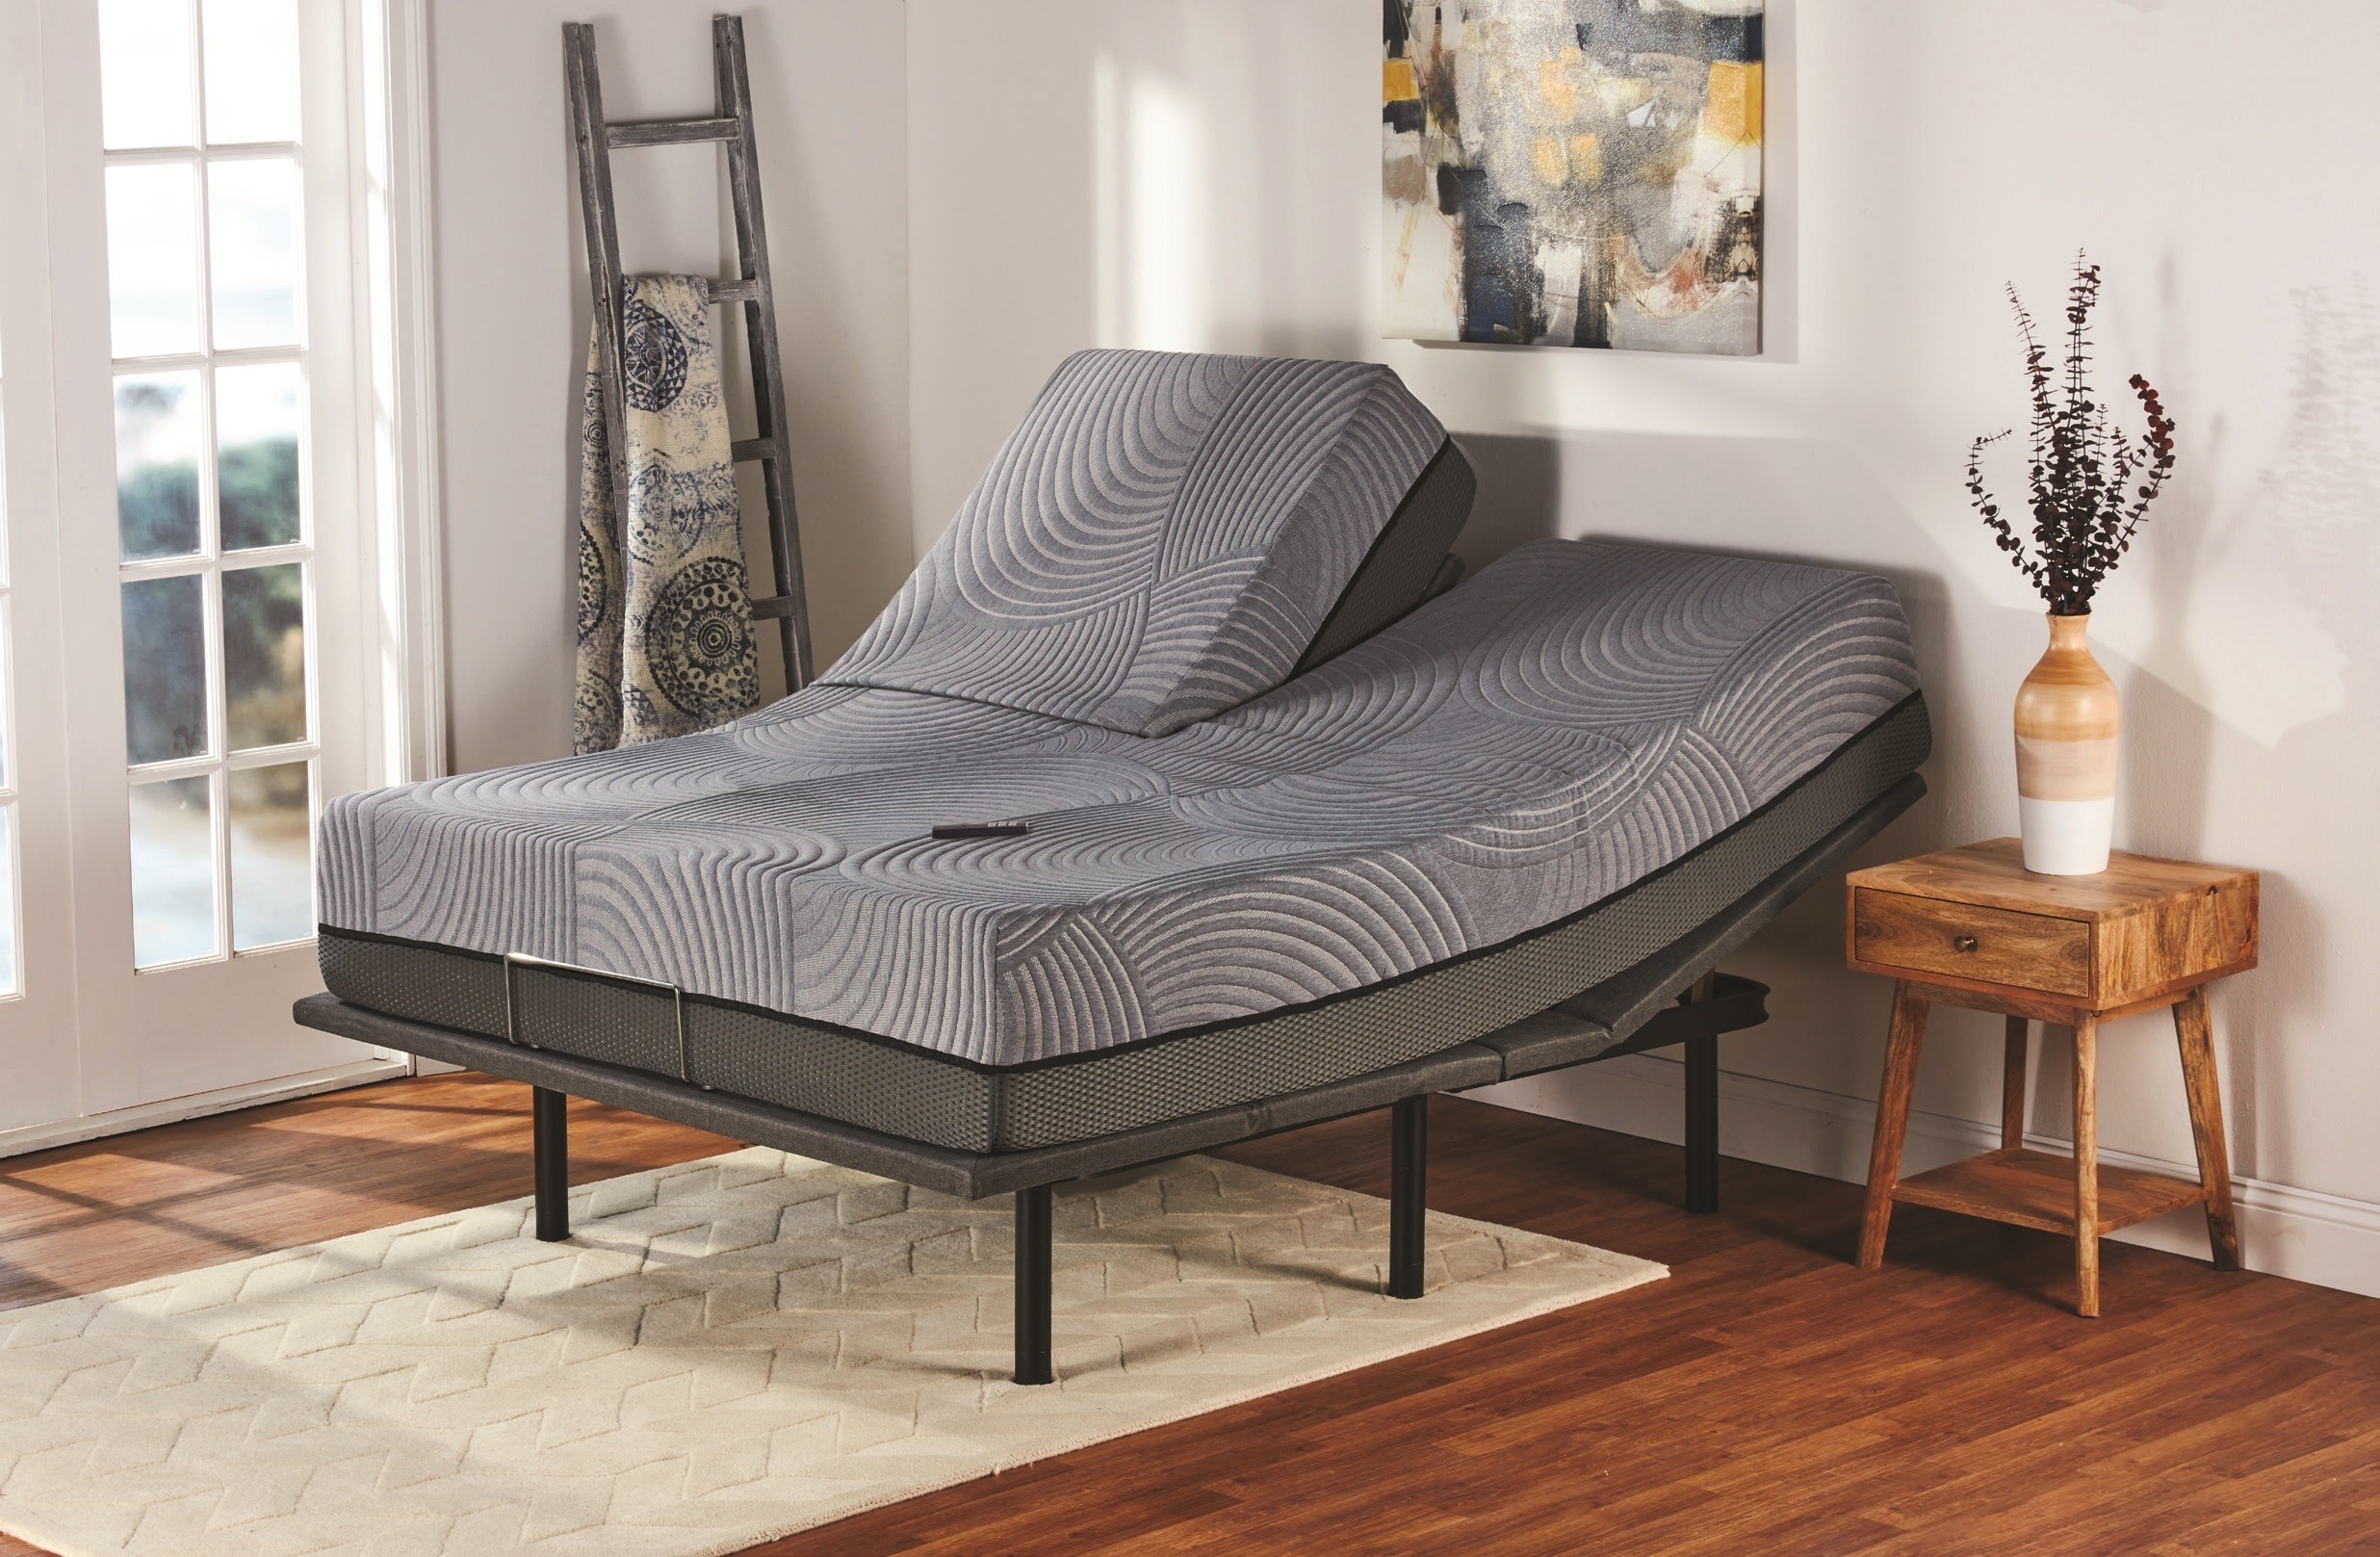 independant bed mattress companies im orlando fl